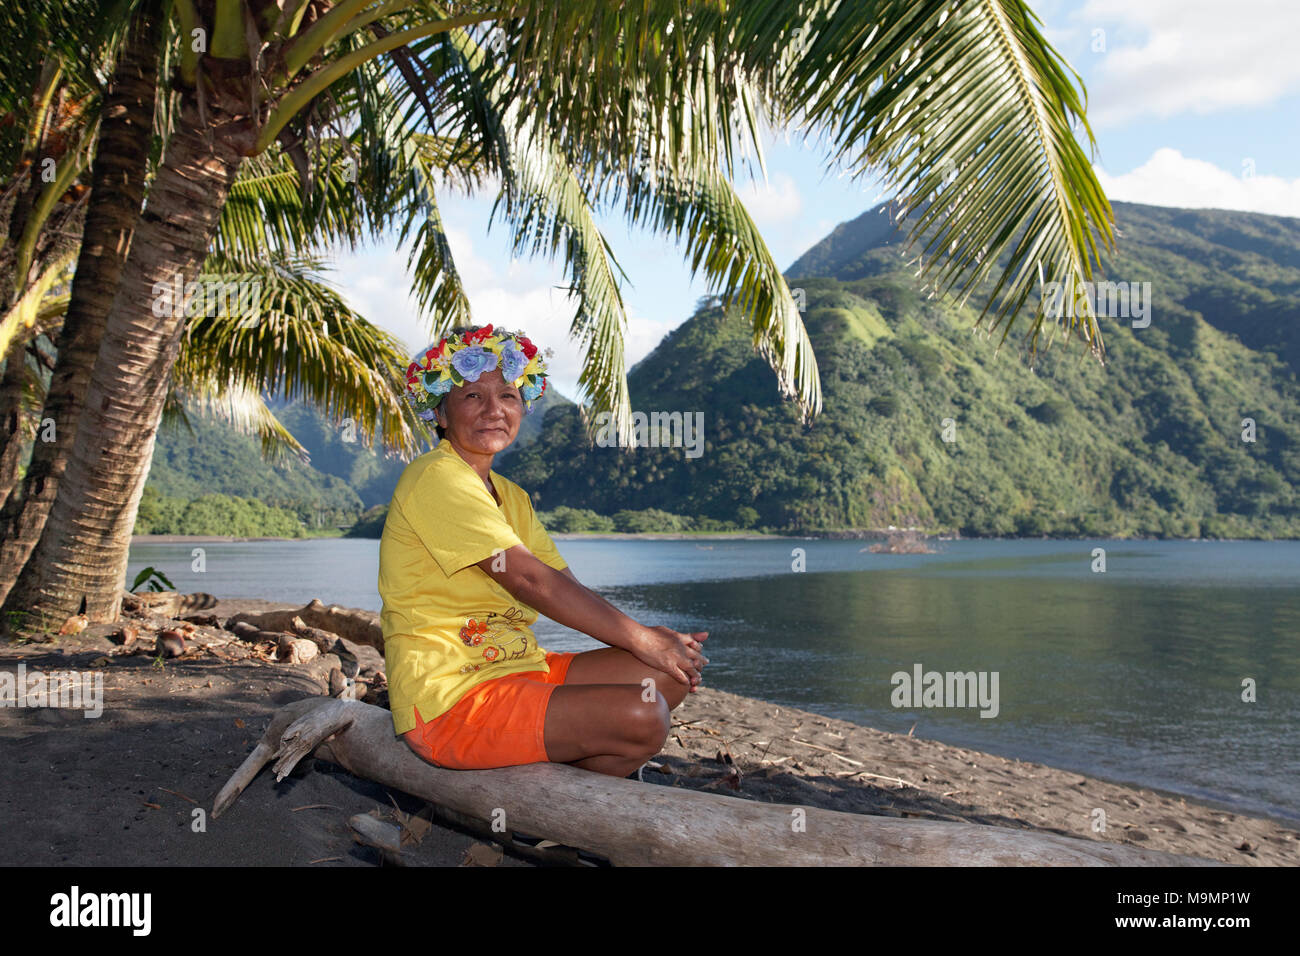 Vieille Femme avec gerbe de fleurs assis sous les palmiers sur le tronc de l'arbre, près de la côte, Taurita Tahiti Iti, iles de la société Banque D'Images